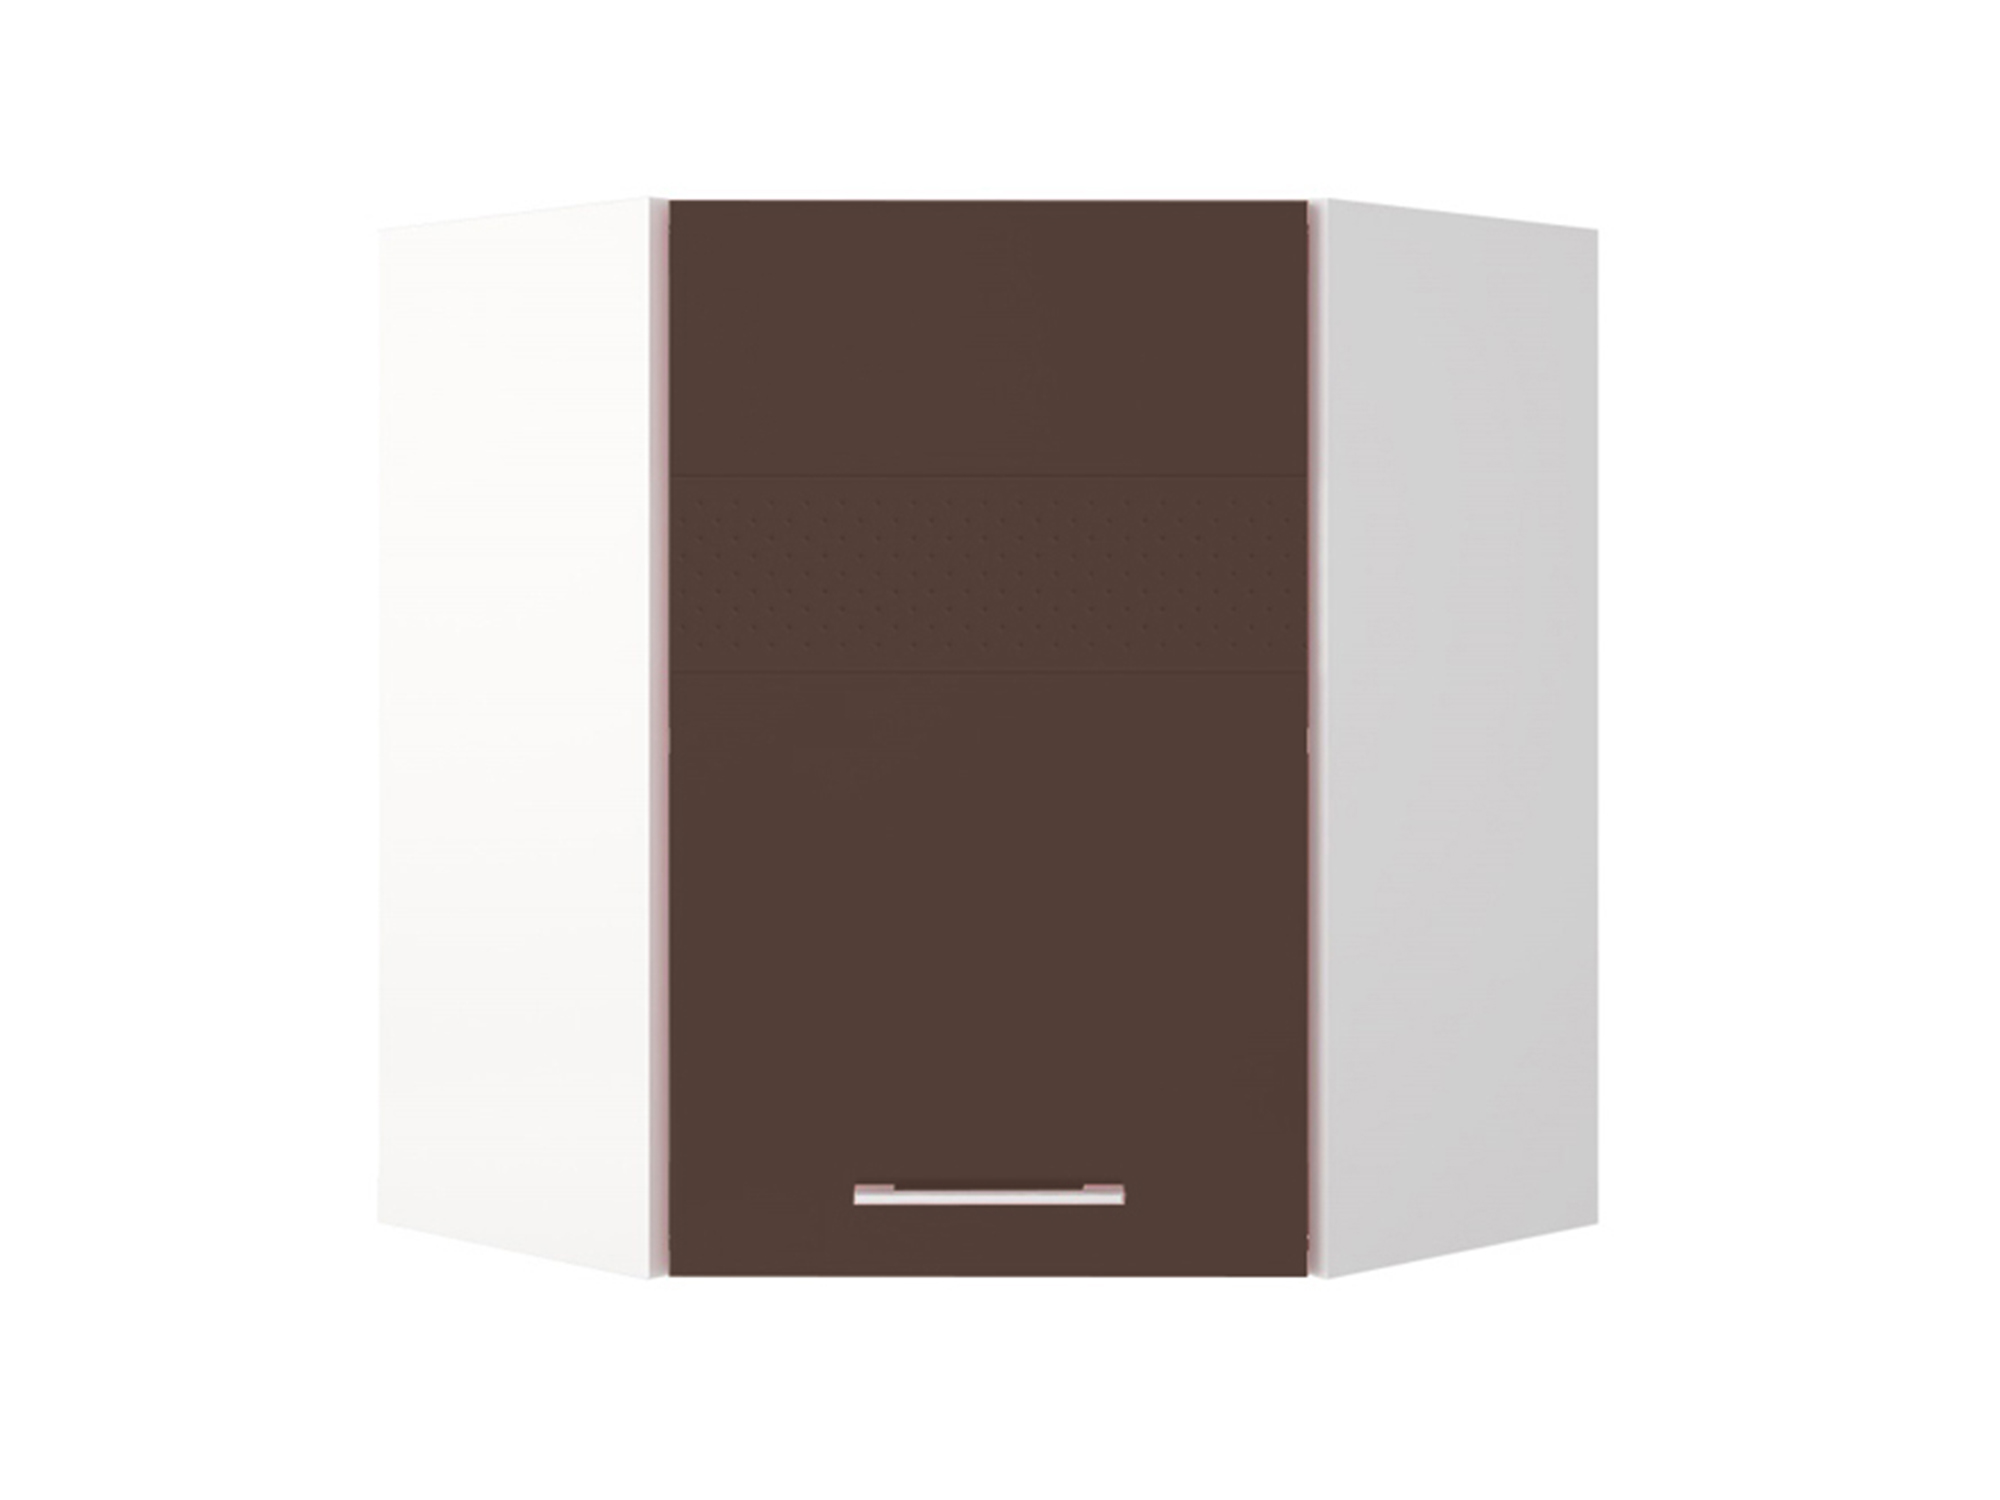 Шкаф навесной угловой Люкс Шоколад глянец, , Коричневый темный, Белый, МДФ, ПВХ, ЛДСП шкаф навесной 40 люкс шоколад глянец коричневый темный белый мдф пвх лдсп